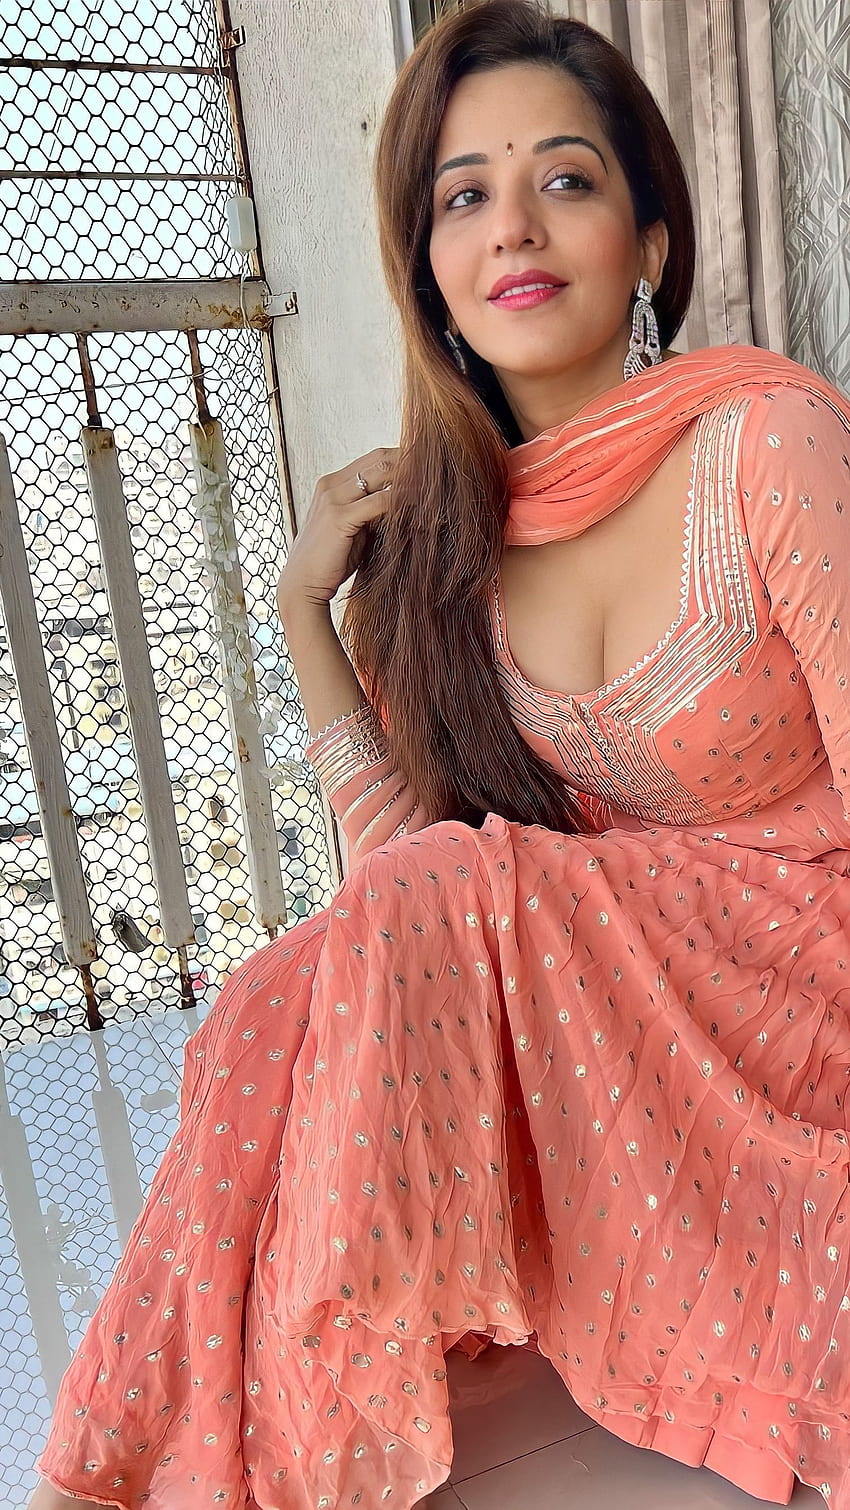 Monalisa, aktris bhojpuri, belahan dada wallpaper ponsel HD